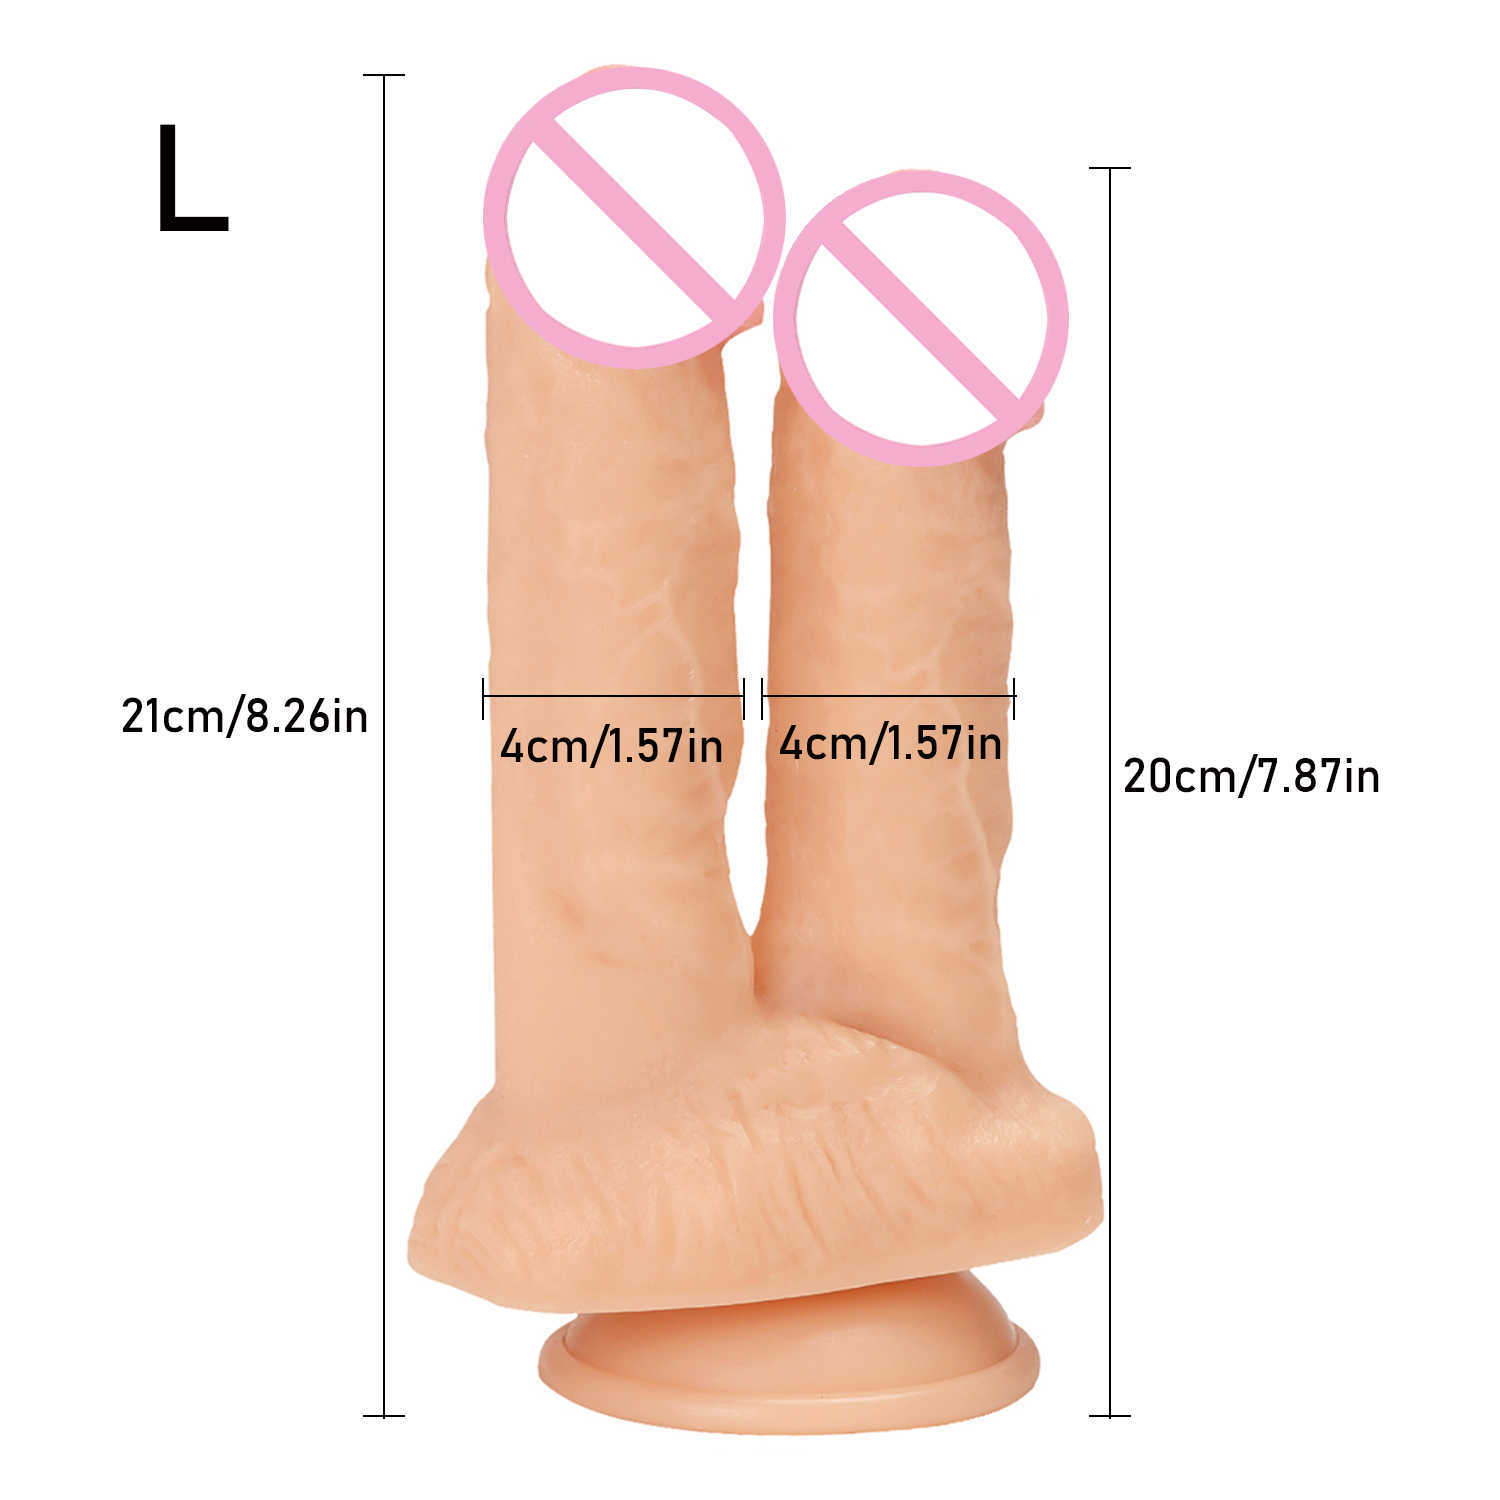 Schoonheid items enorme dubbele dildo's penetratie vagina en anus zachte huid gevoel penis hoofd phallus sexy speelgoed voor vrouwen masturbatie